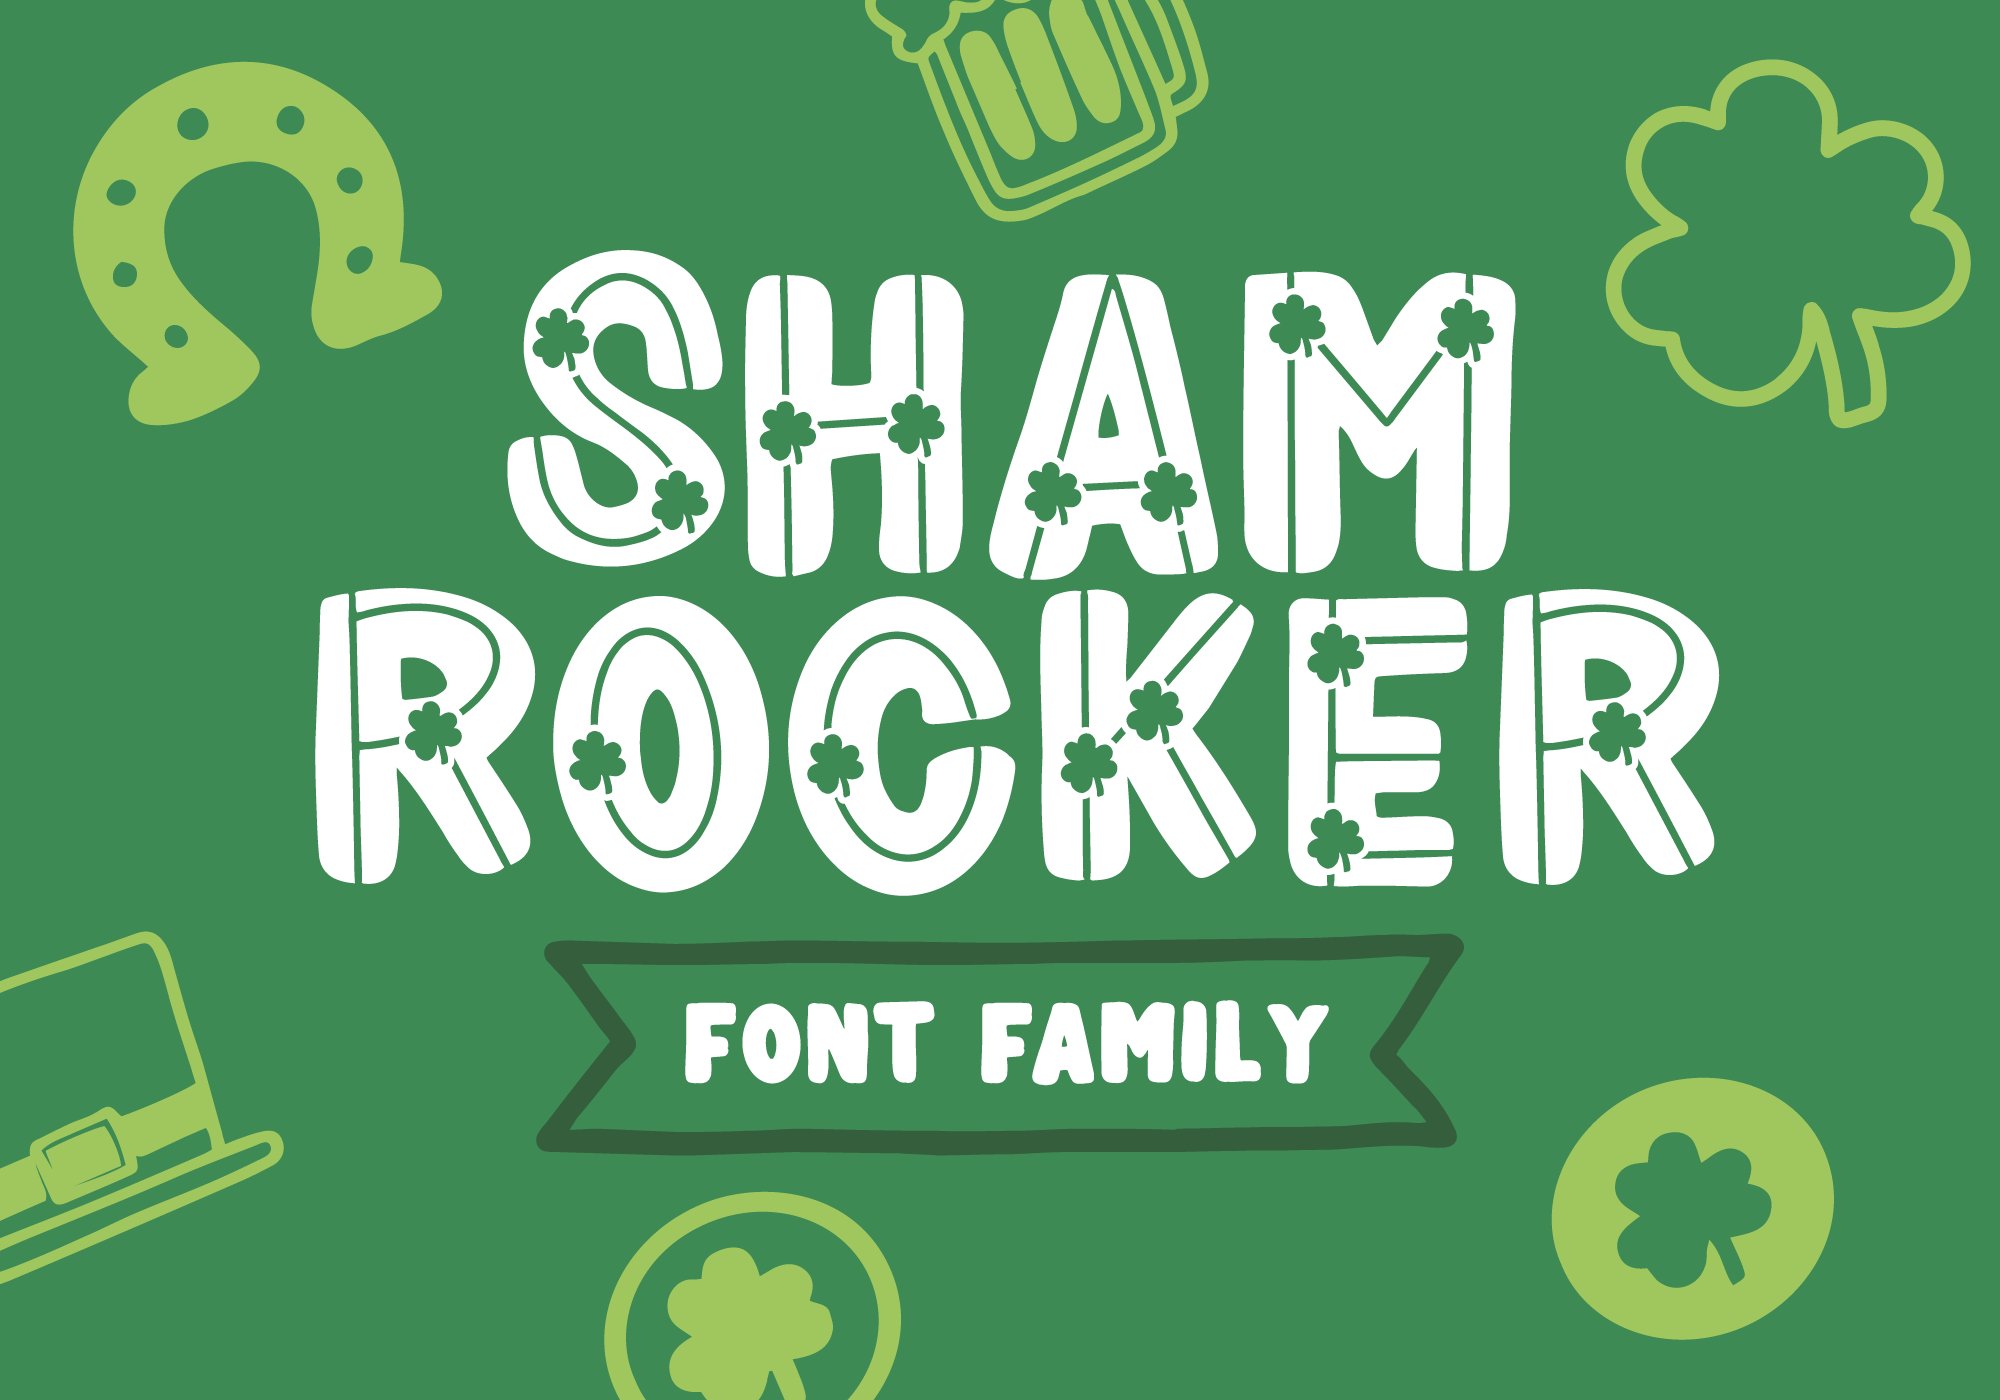 Shamrocker - Font Family cover image.